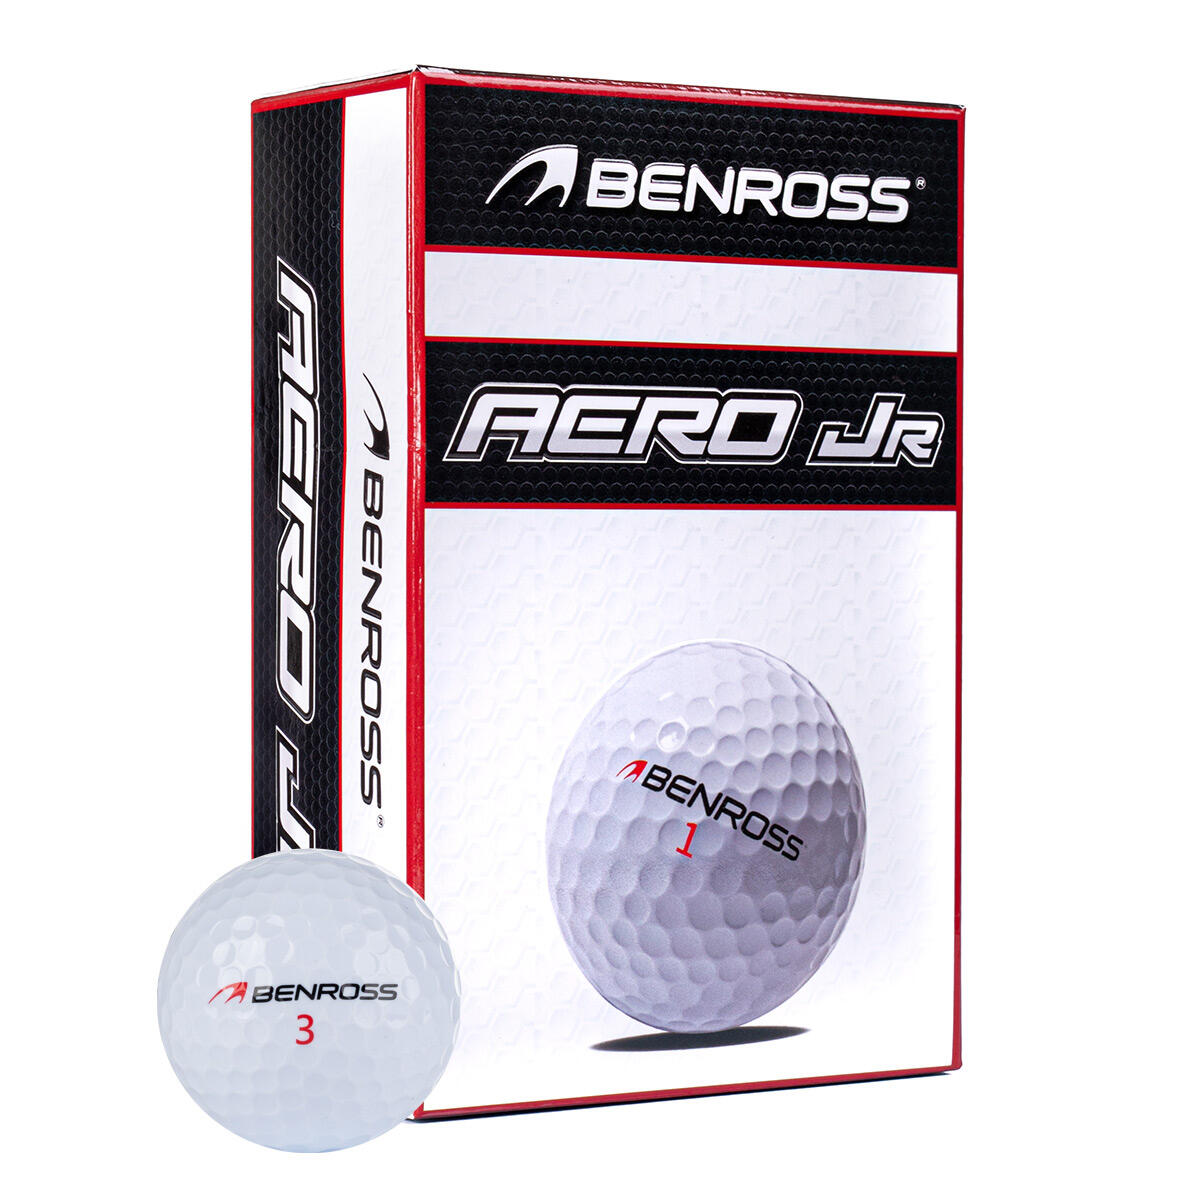 BENROSS Benross Aero Junior 6 Golf Ball Pack